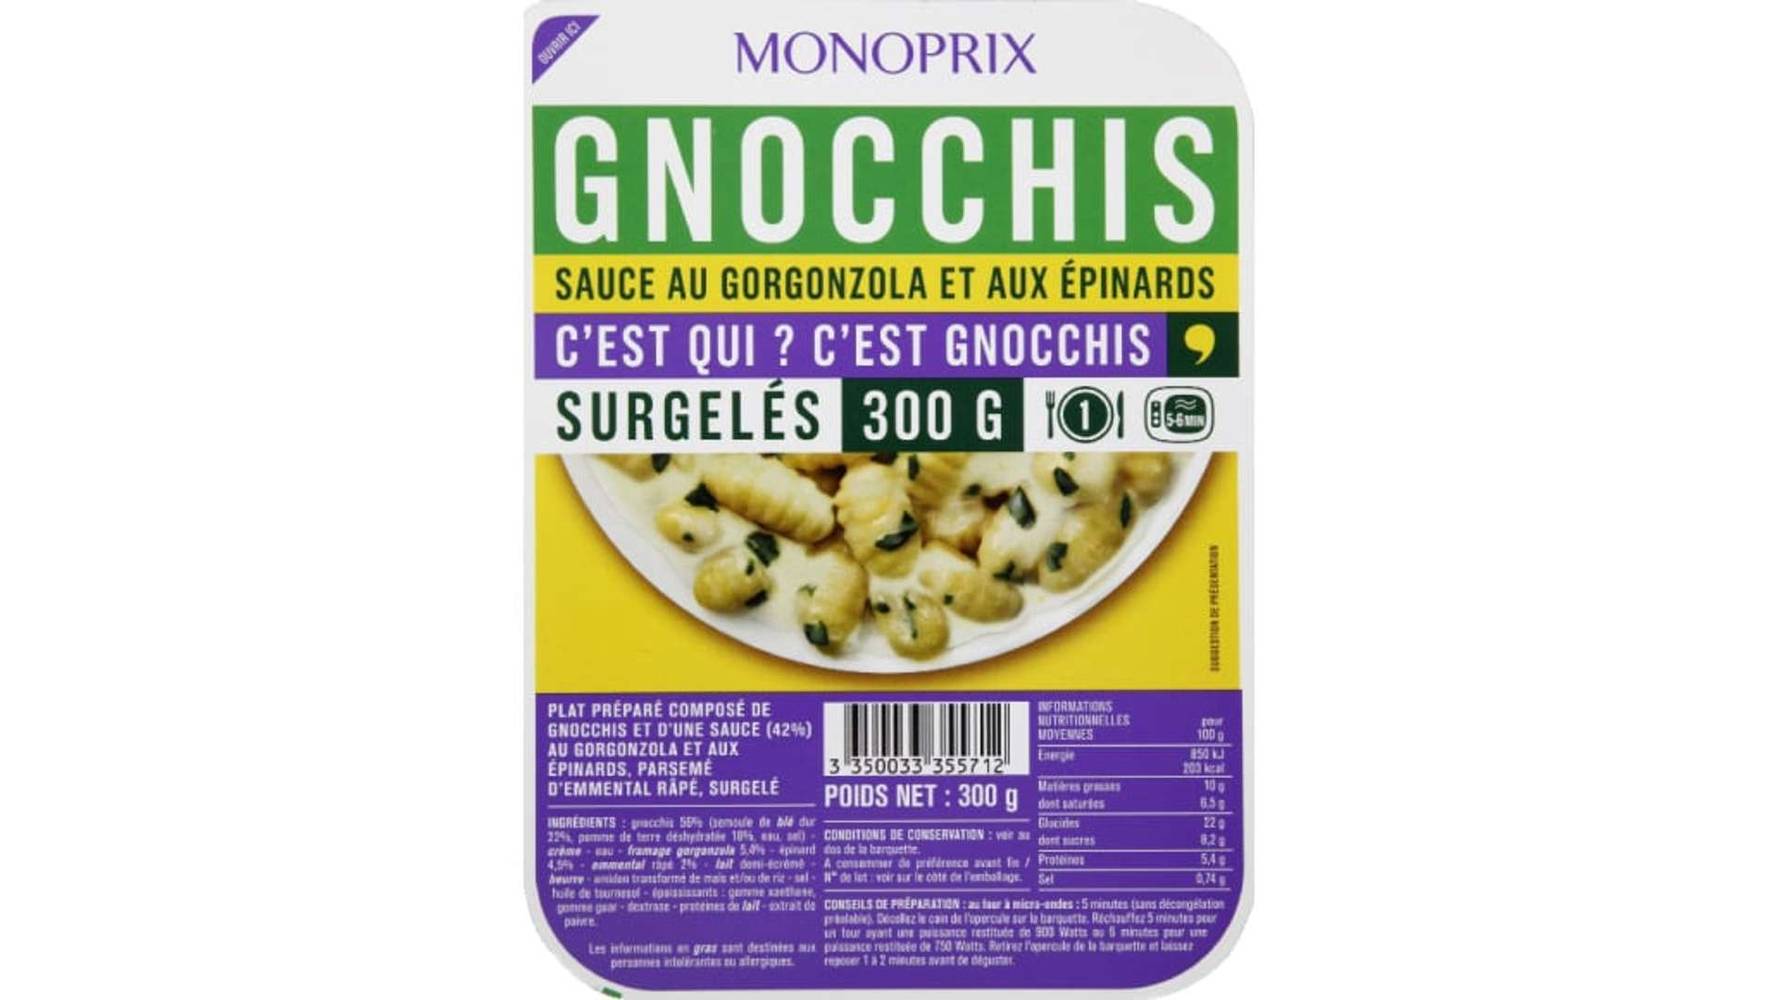 Monoprix Gnocchis sauce au gorgonzola et aux épinards, surgelé La barquette de 300g